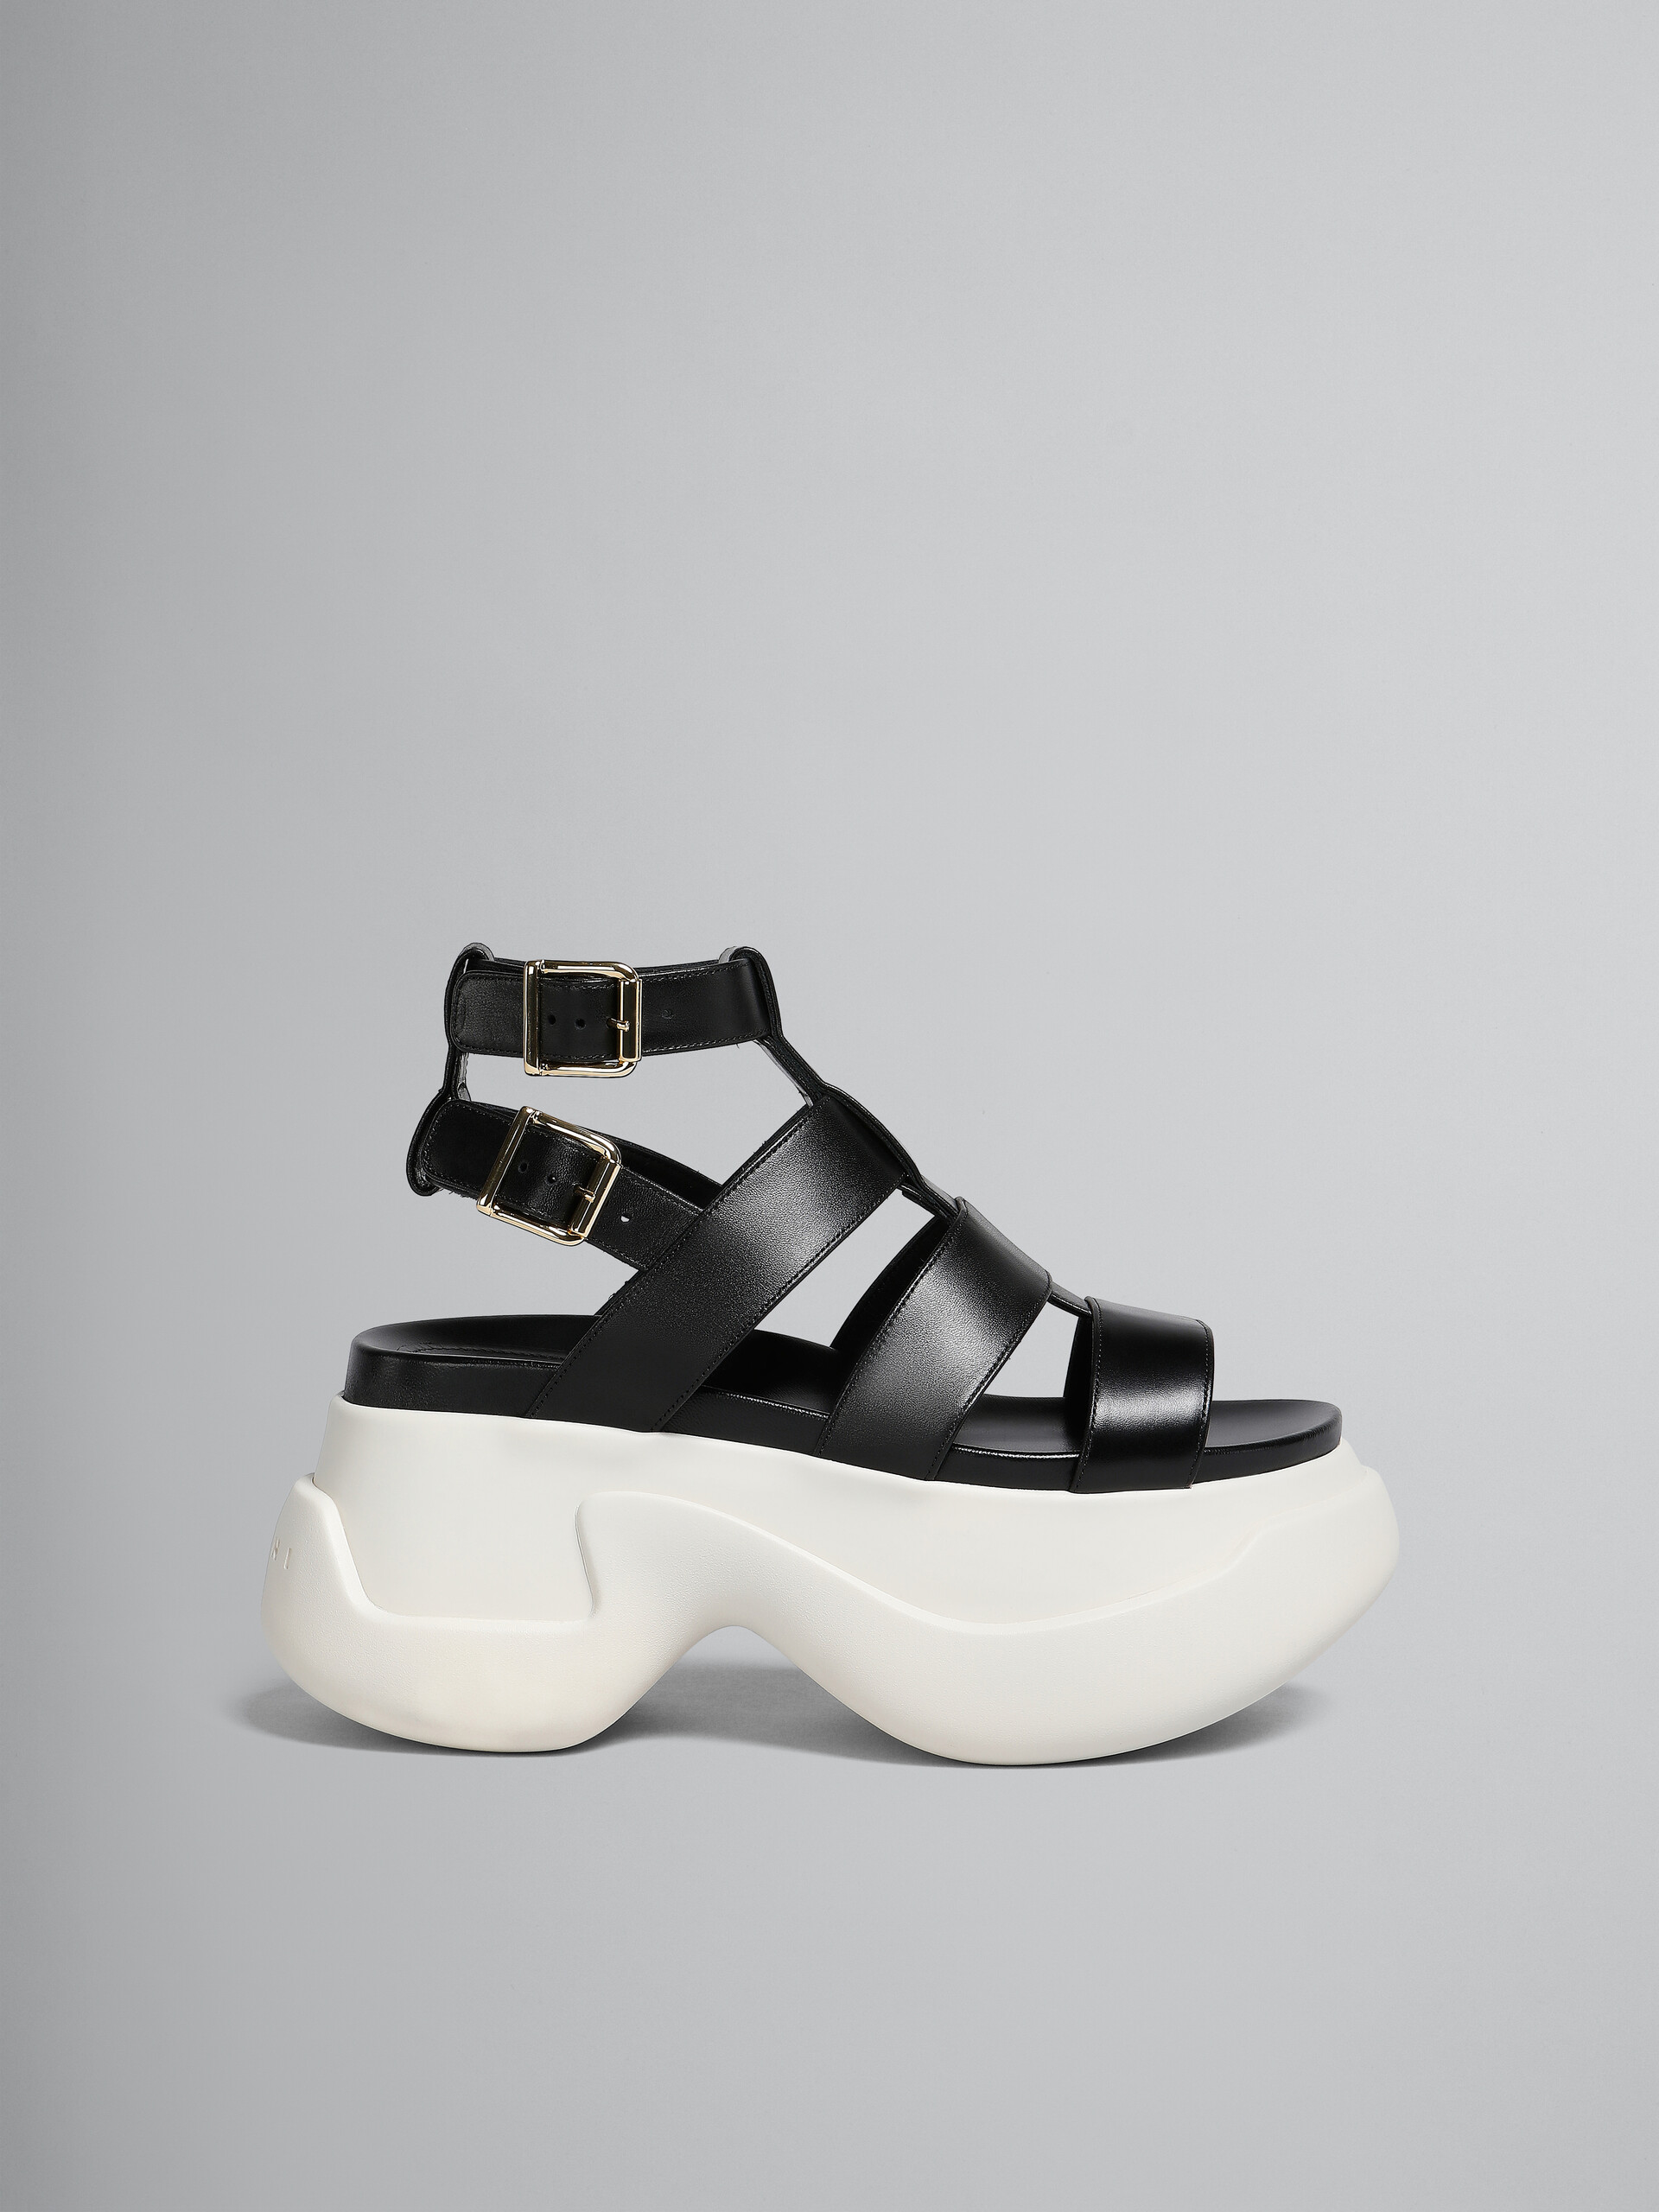 Black leather gladiator sandal with platform sole - Sandals - Image 1